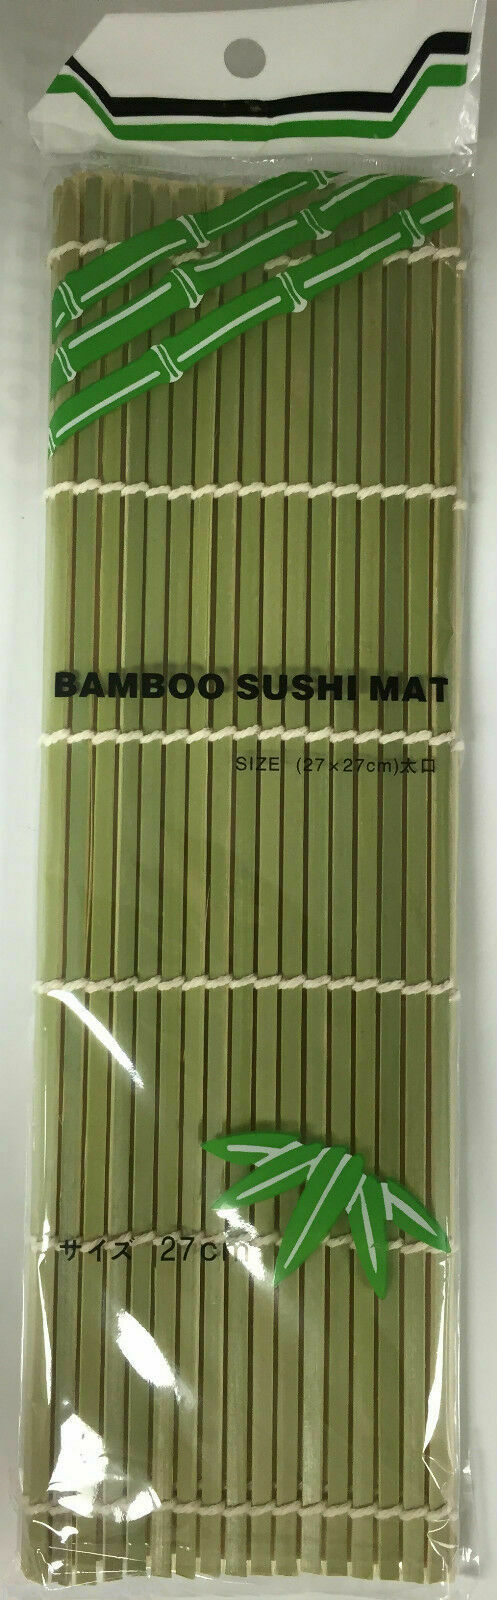 Natural Bamboo Sushi Mat Sushi Roller 27cmx27cm